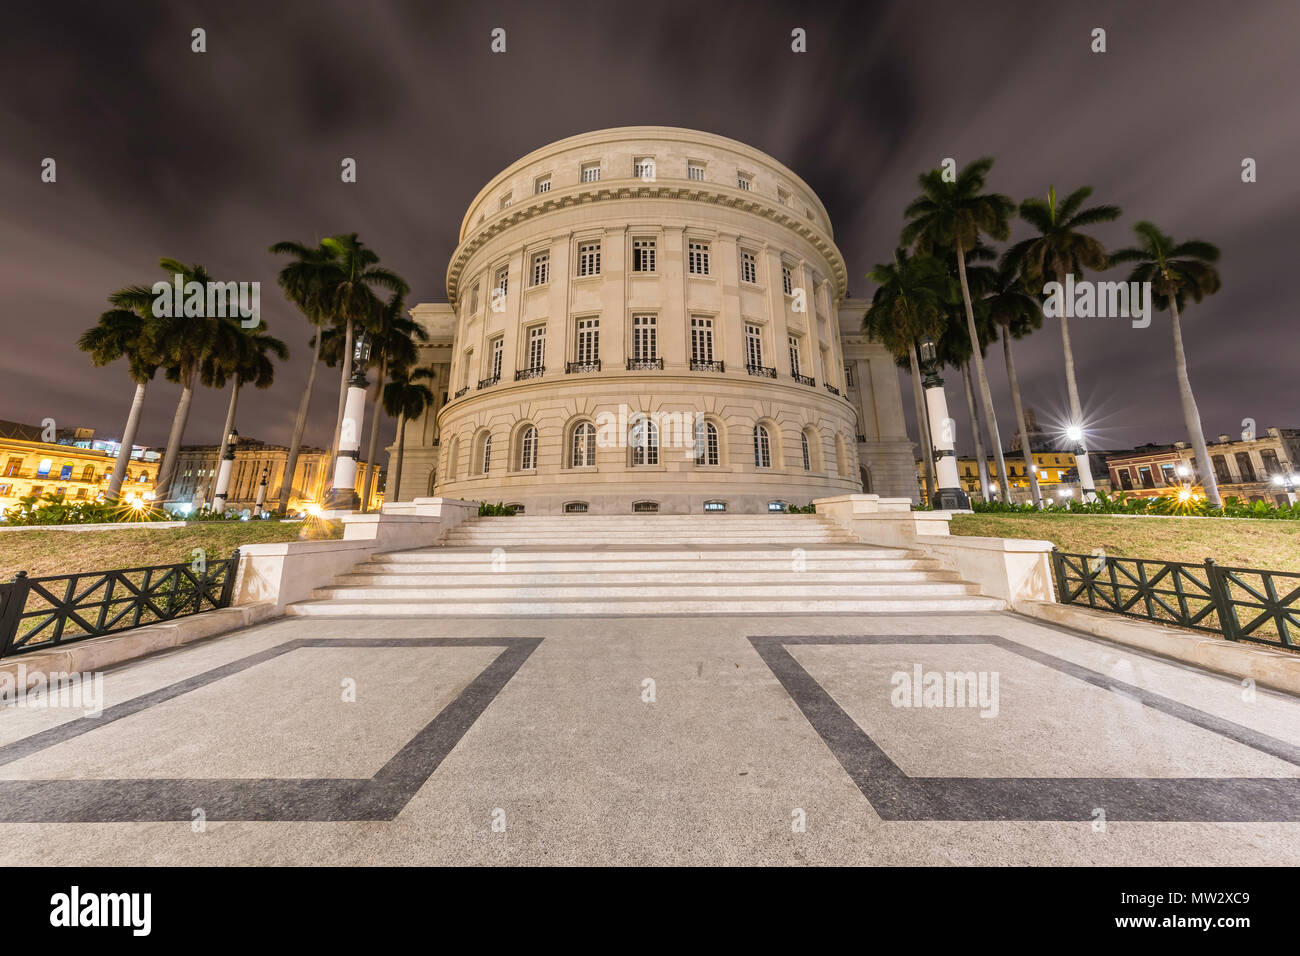 Le peuple cubain Capitol building at night, El Capitolio, le centre-ville de La Havane, Cuba. Banque D'Images